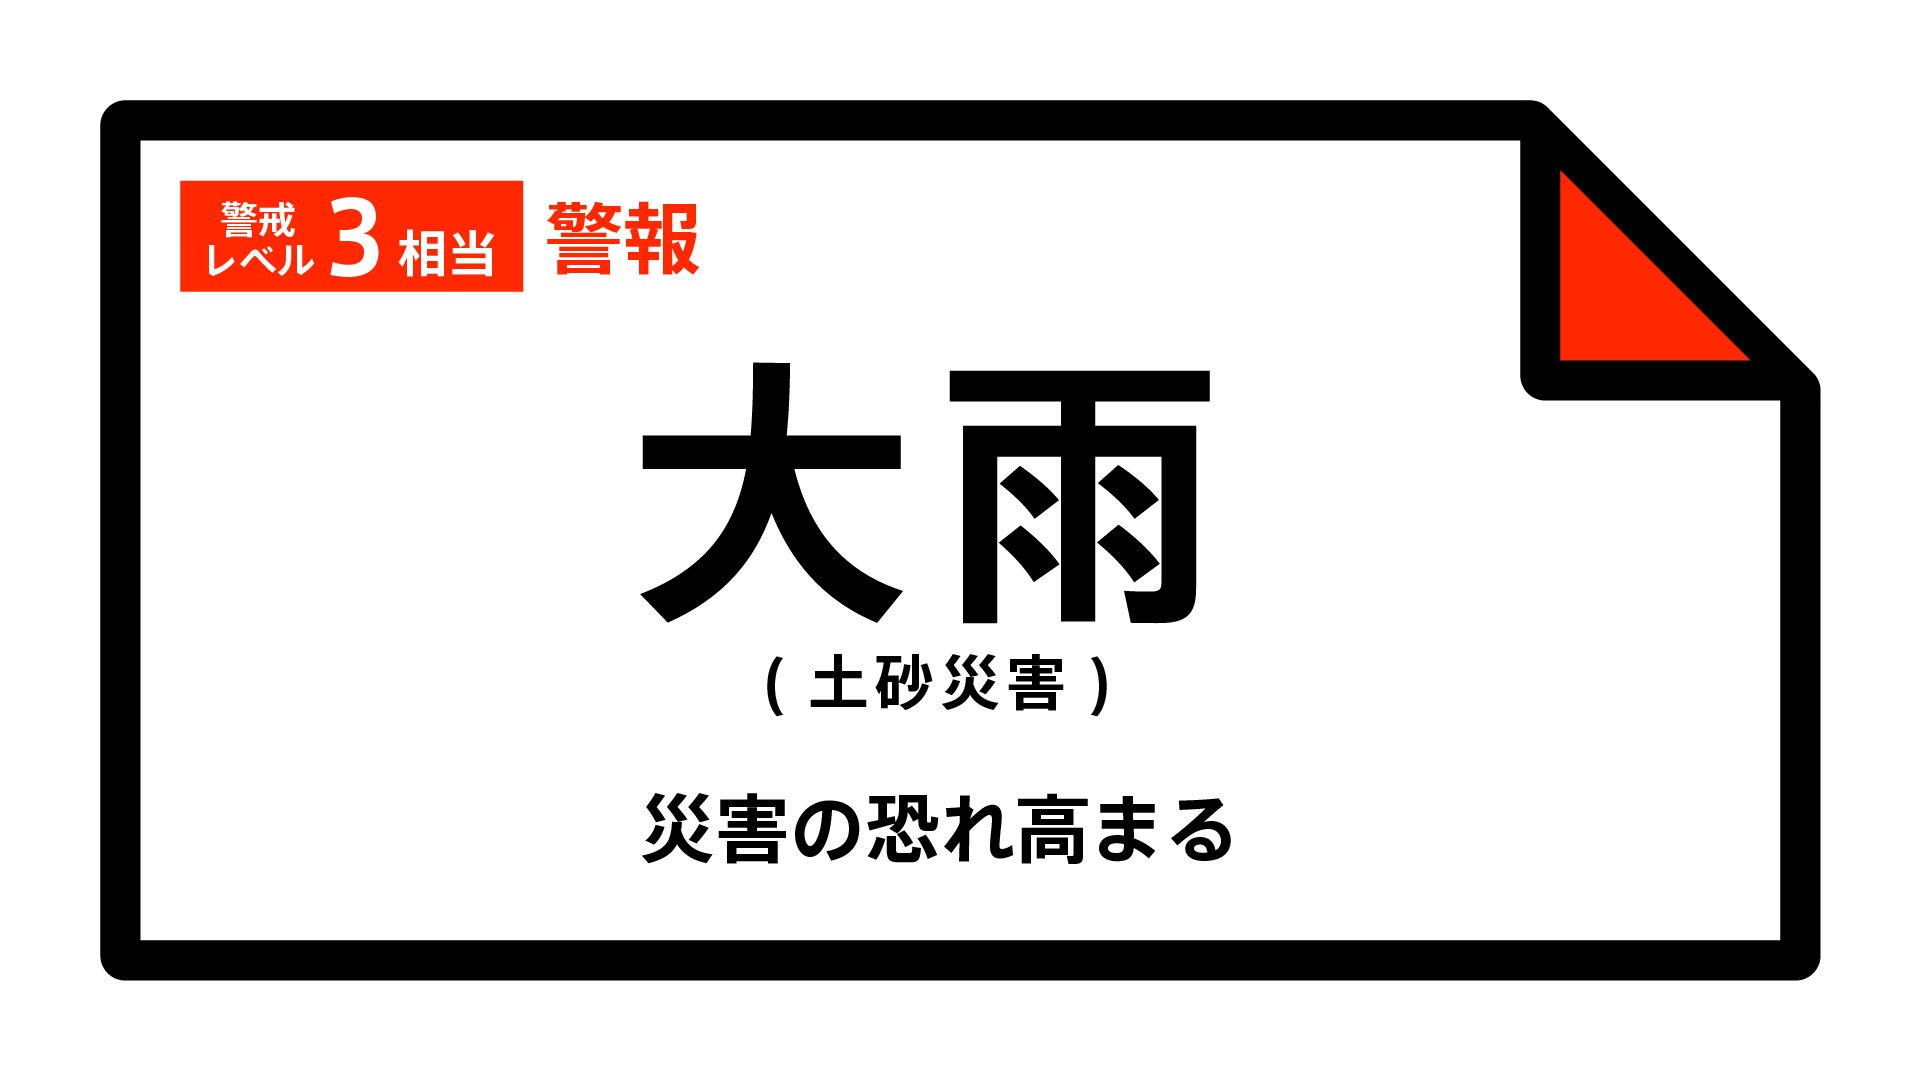 【大雨警報】神奈川県・南足柄市に発表